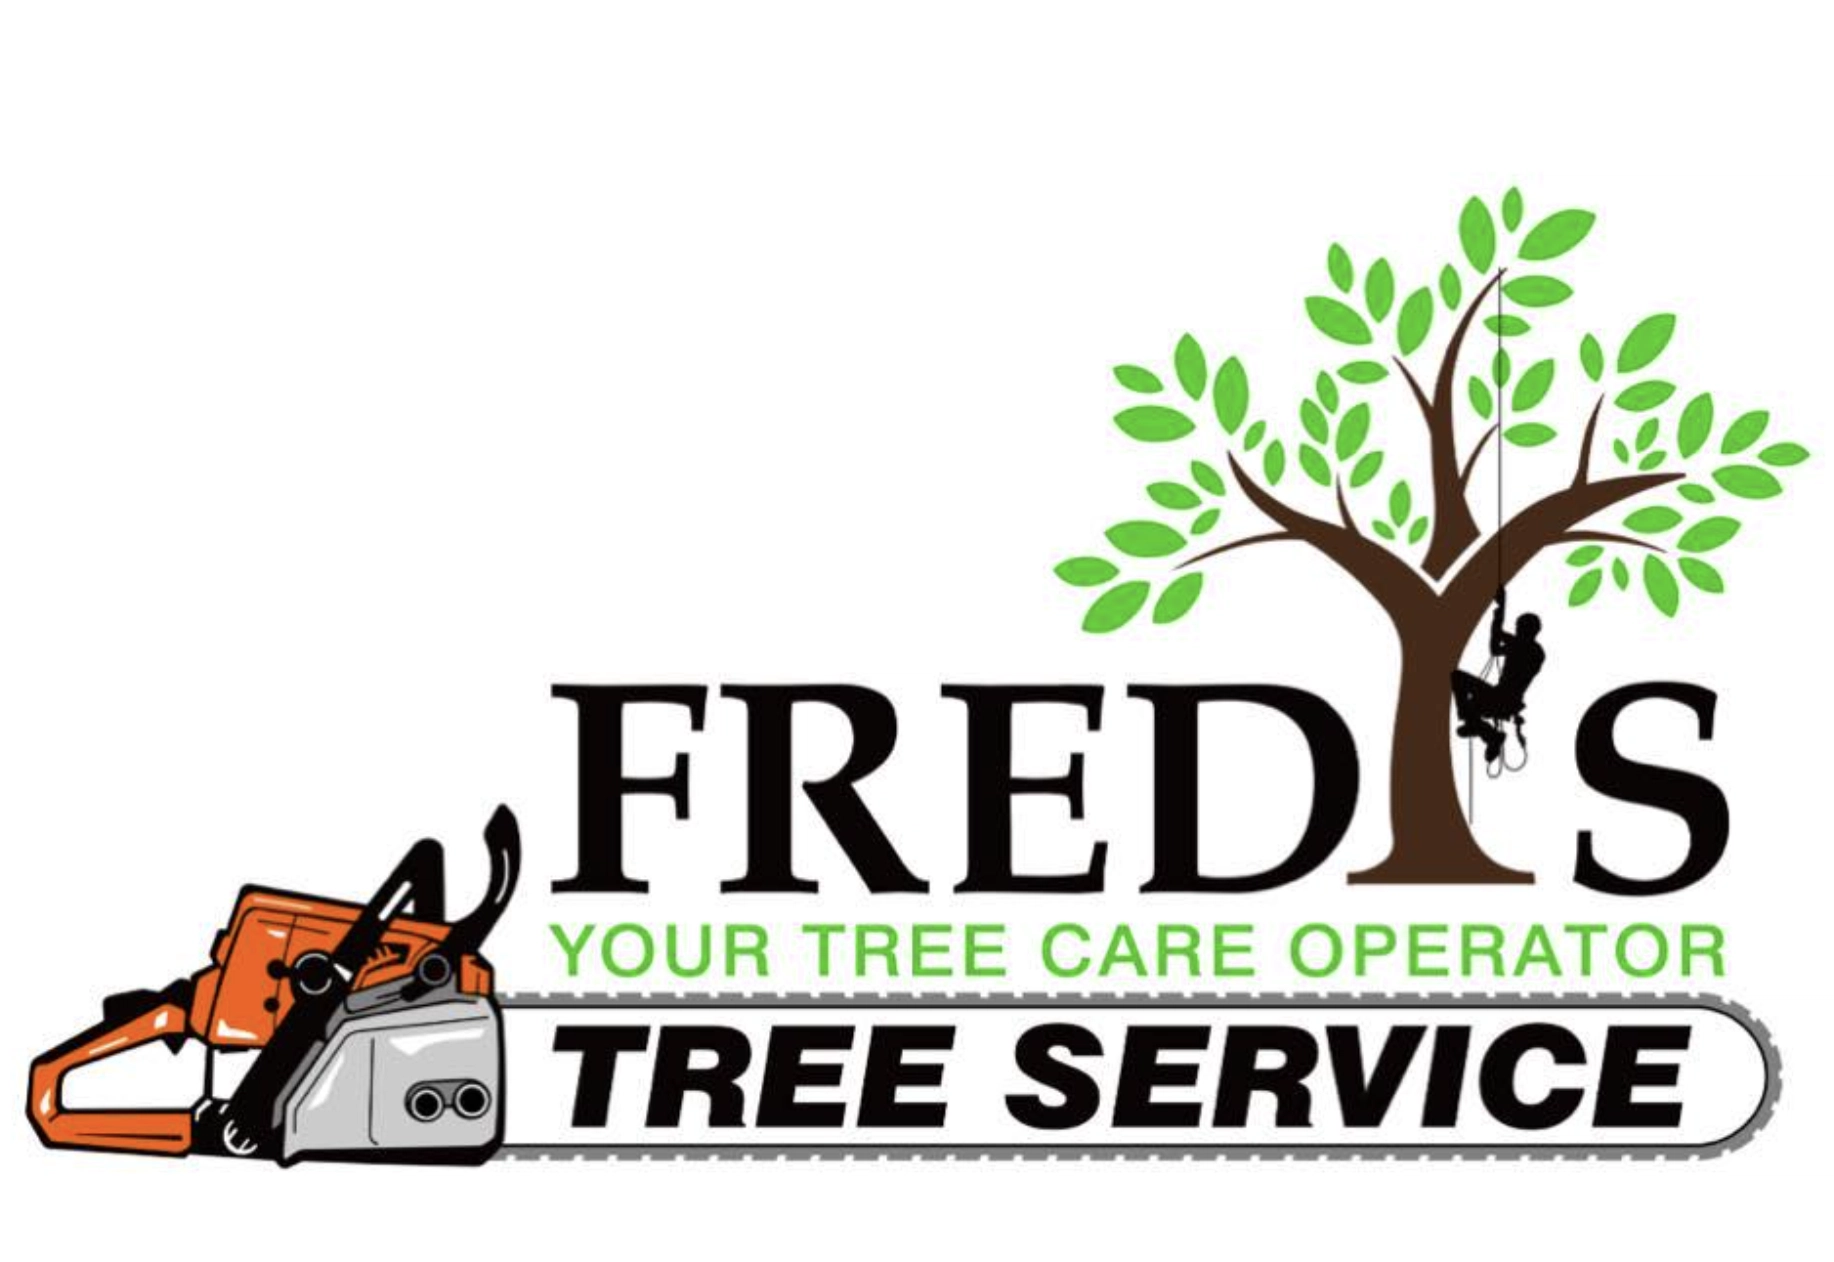 Fredy's Tree Service Logo